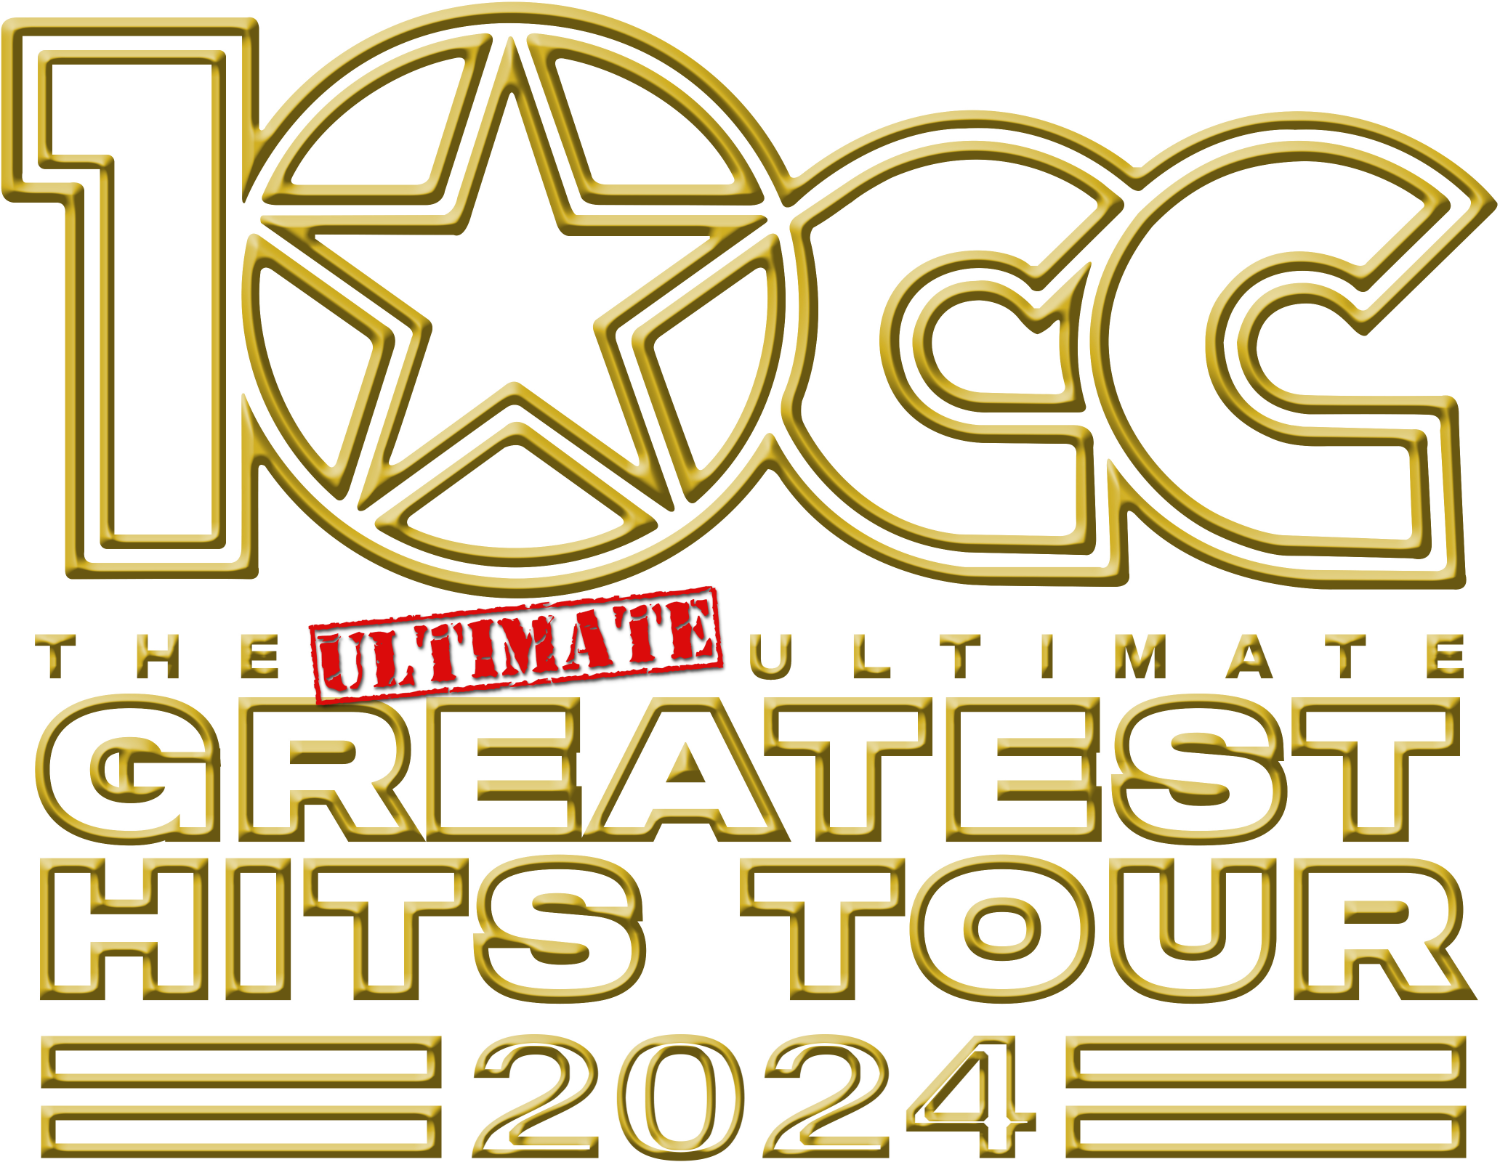 10cc tour 2022 setlist